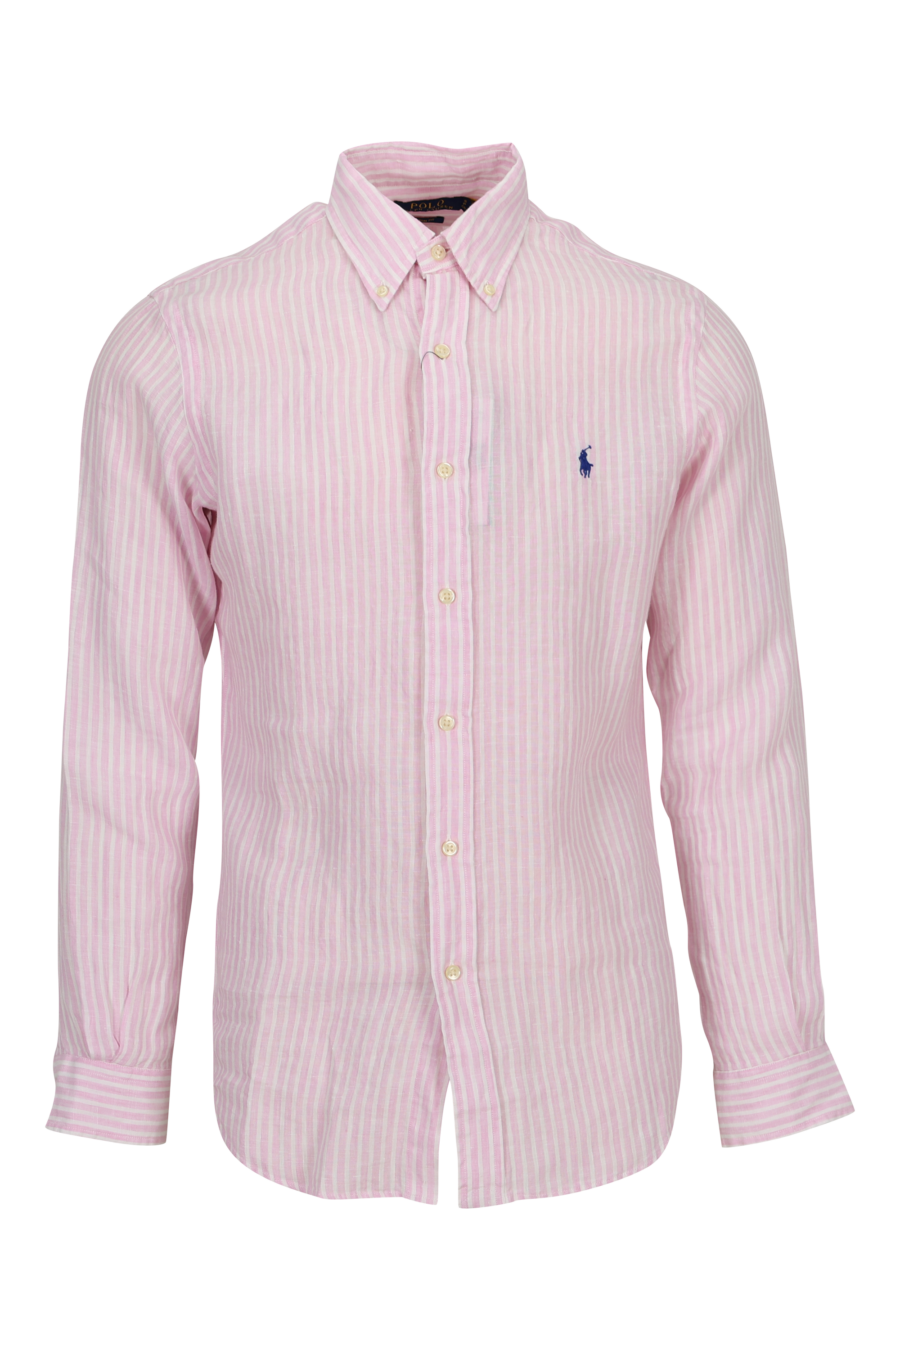 Camisa rosa con lineas blancas y logo "polo" - 3616534011084